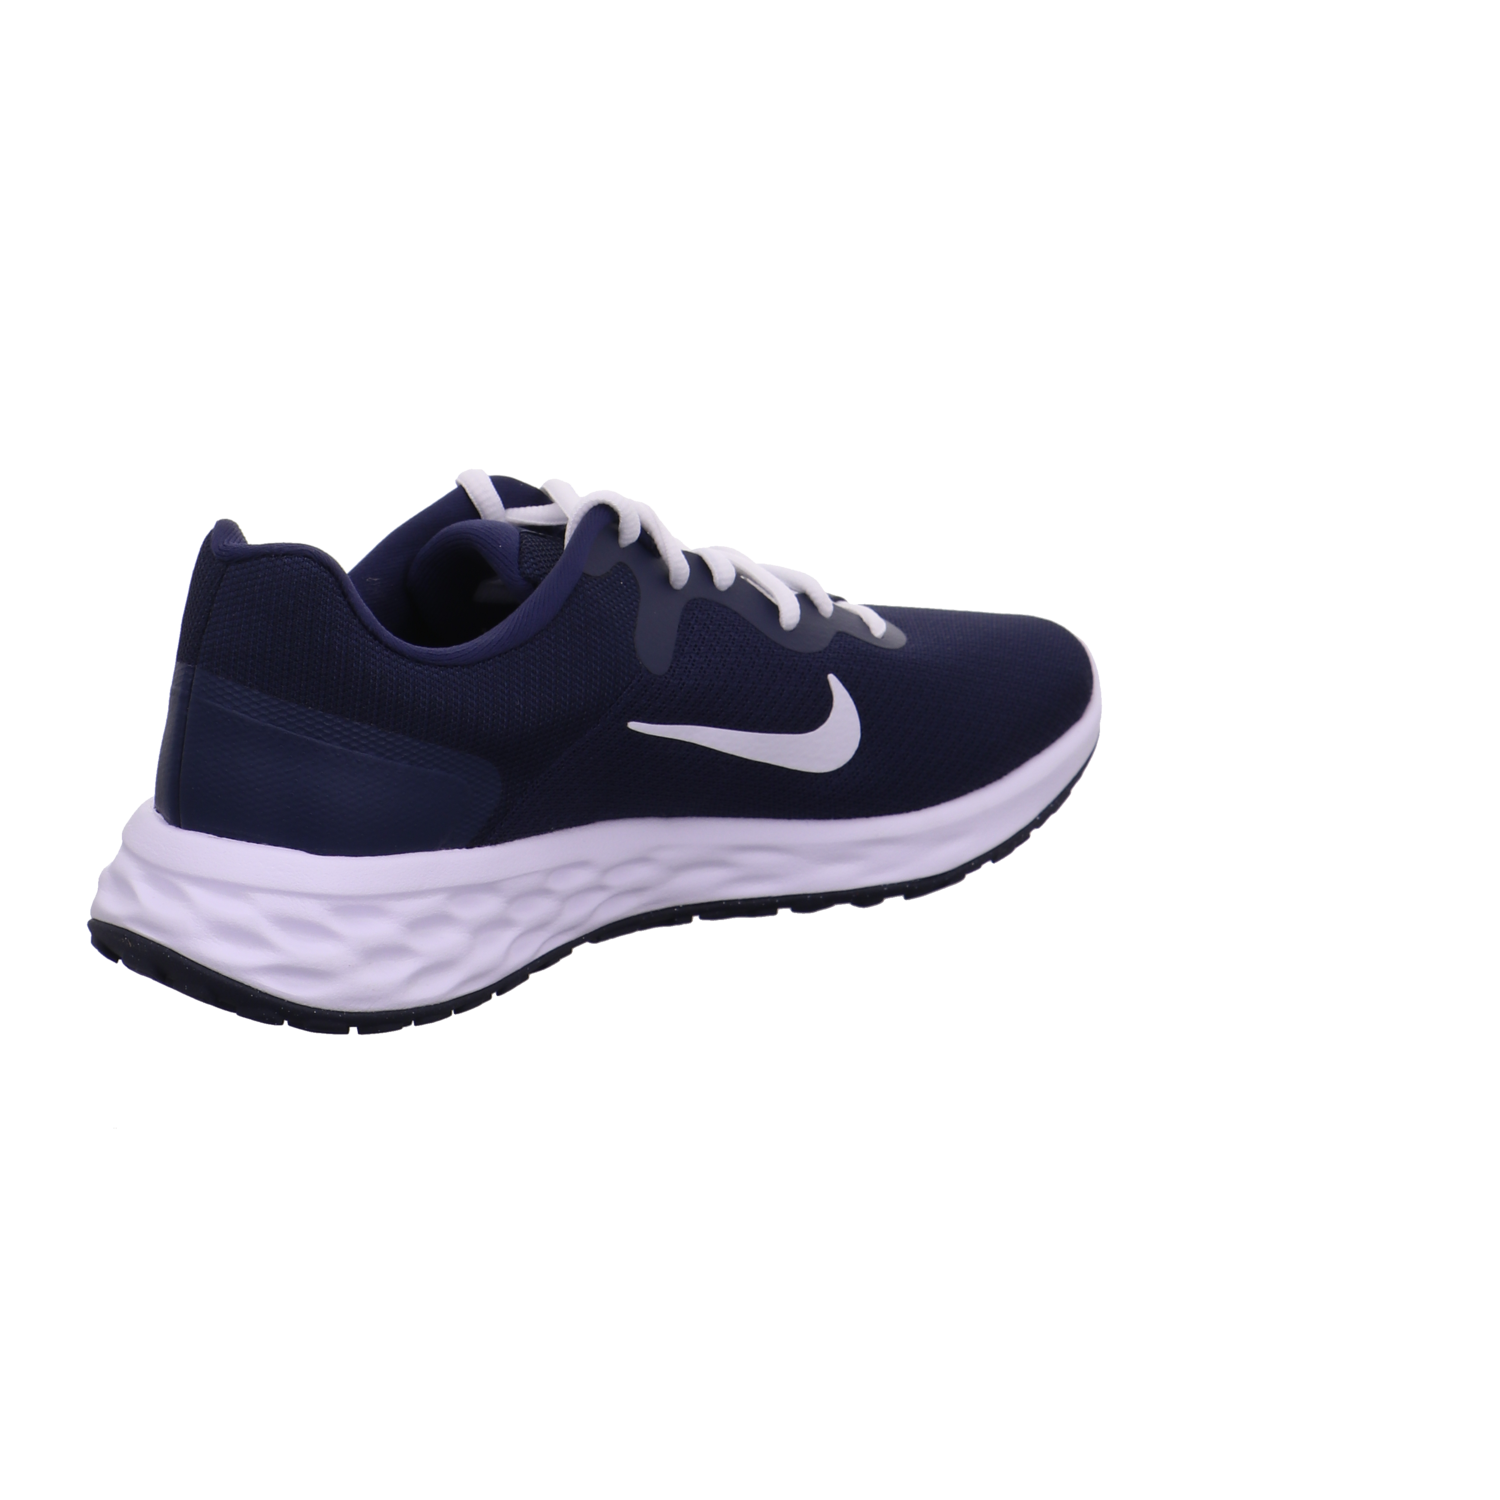 Nike Training und Hallenschuhe blau kombi Bild5